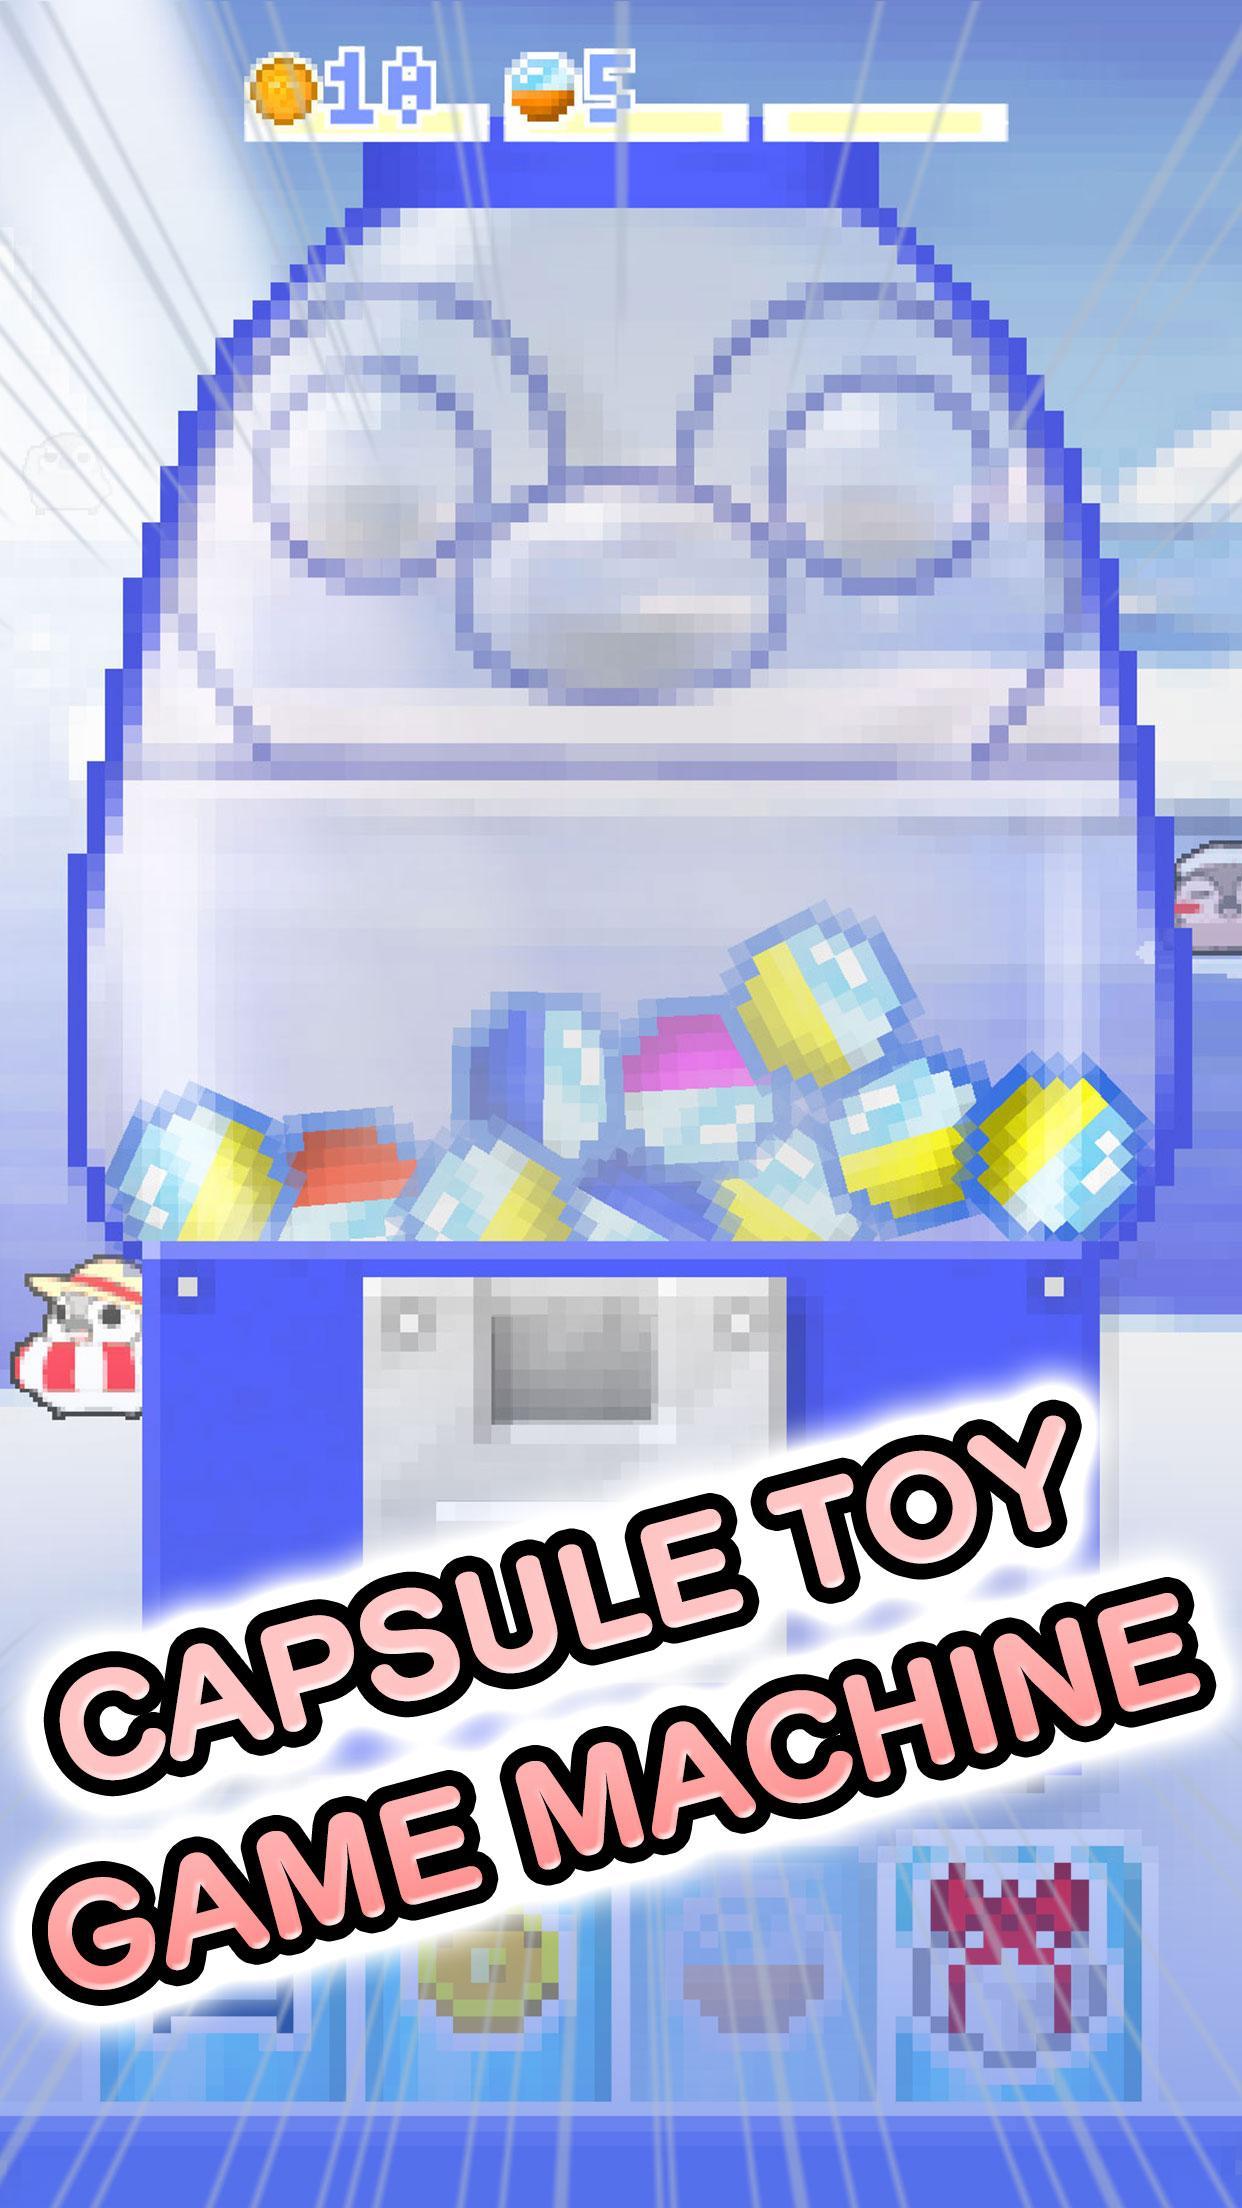 Pesoguin capsule toy game screenshot game